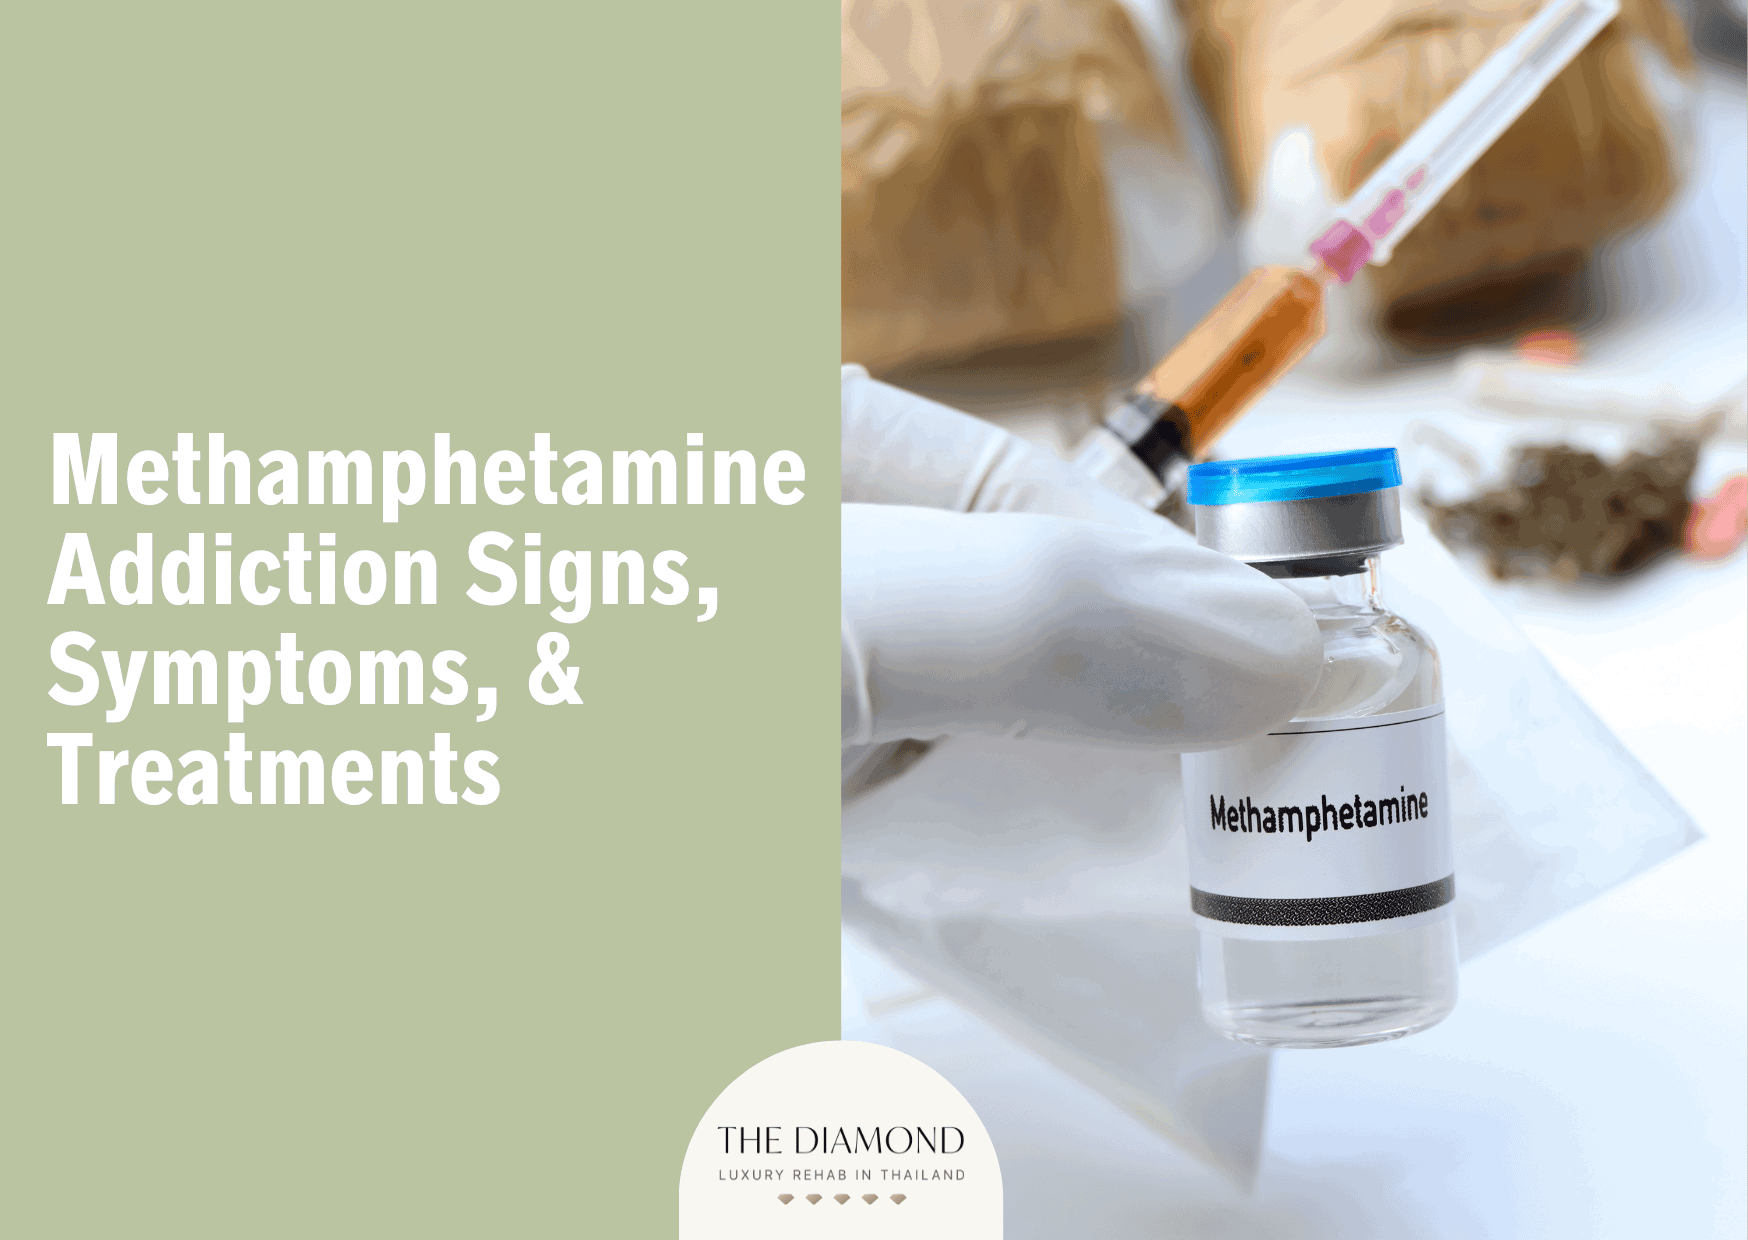 Methamphetamine addiction